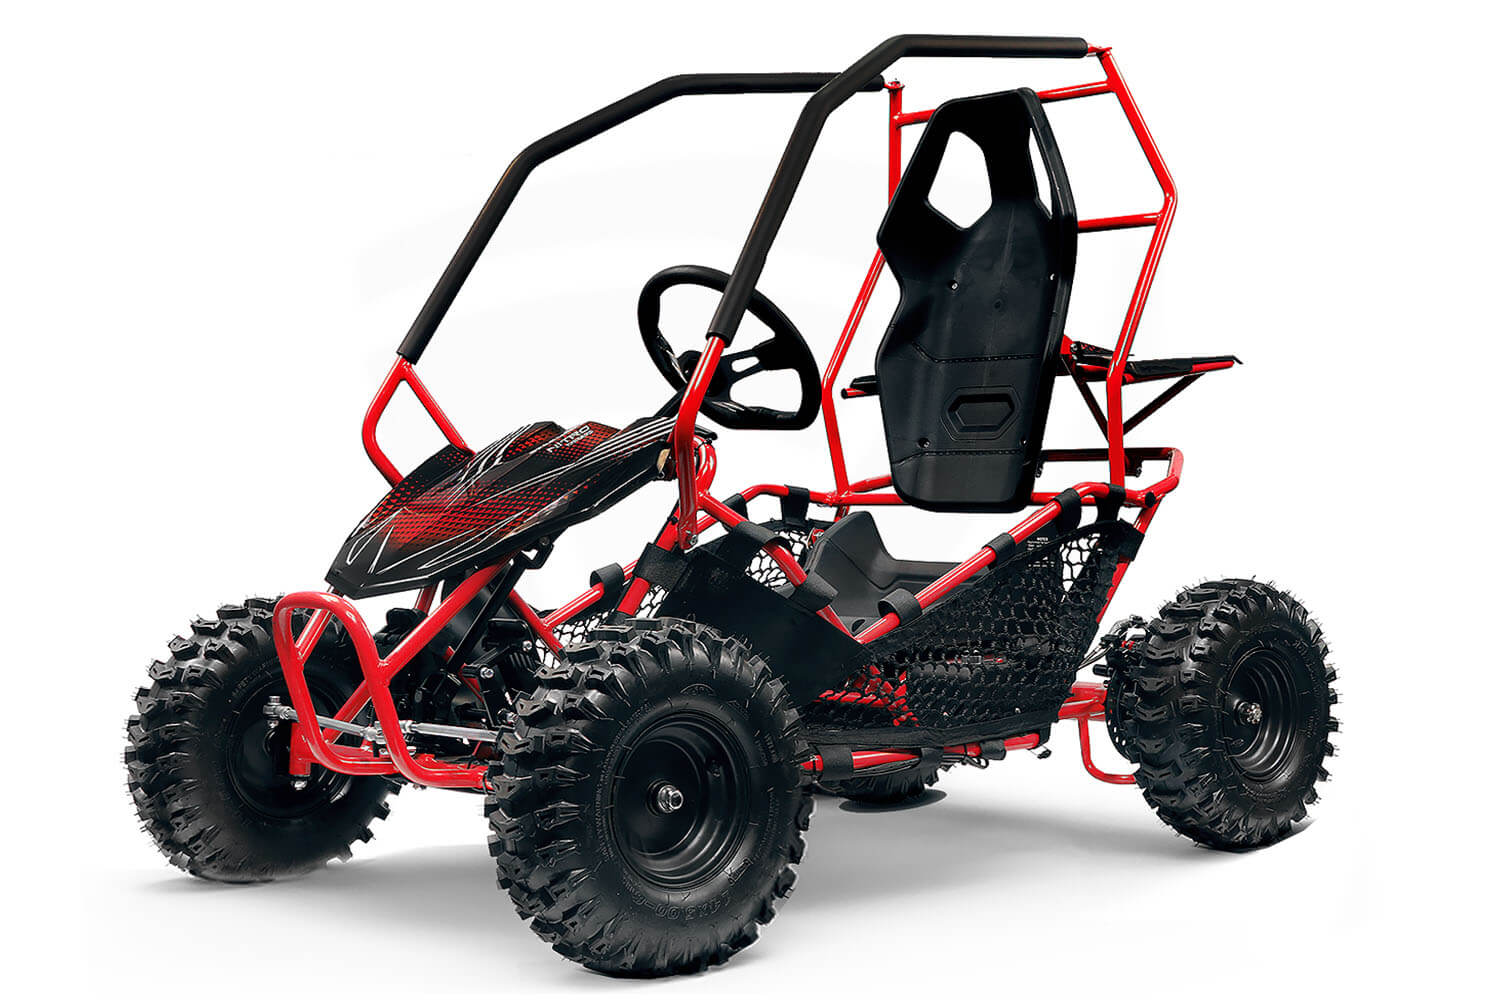 https://minibikes.store/image/catalog/produkty/gk004e/Gokid-1000w-36v-crosser-electric-kids-mini-buggy-gokart-off-road-battery-powered-power-wheels-nitro-motors%20(1).jpg